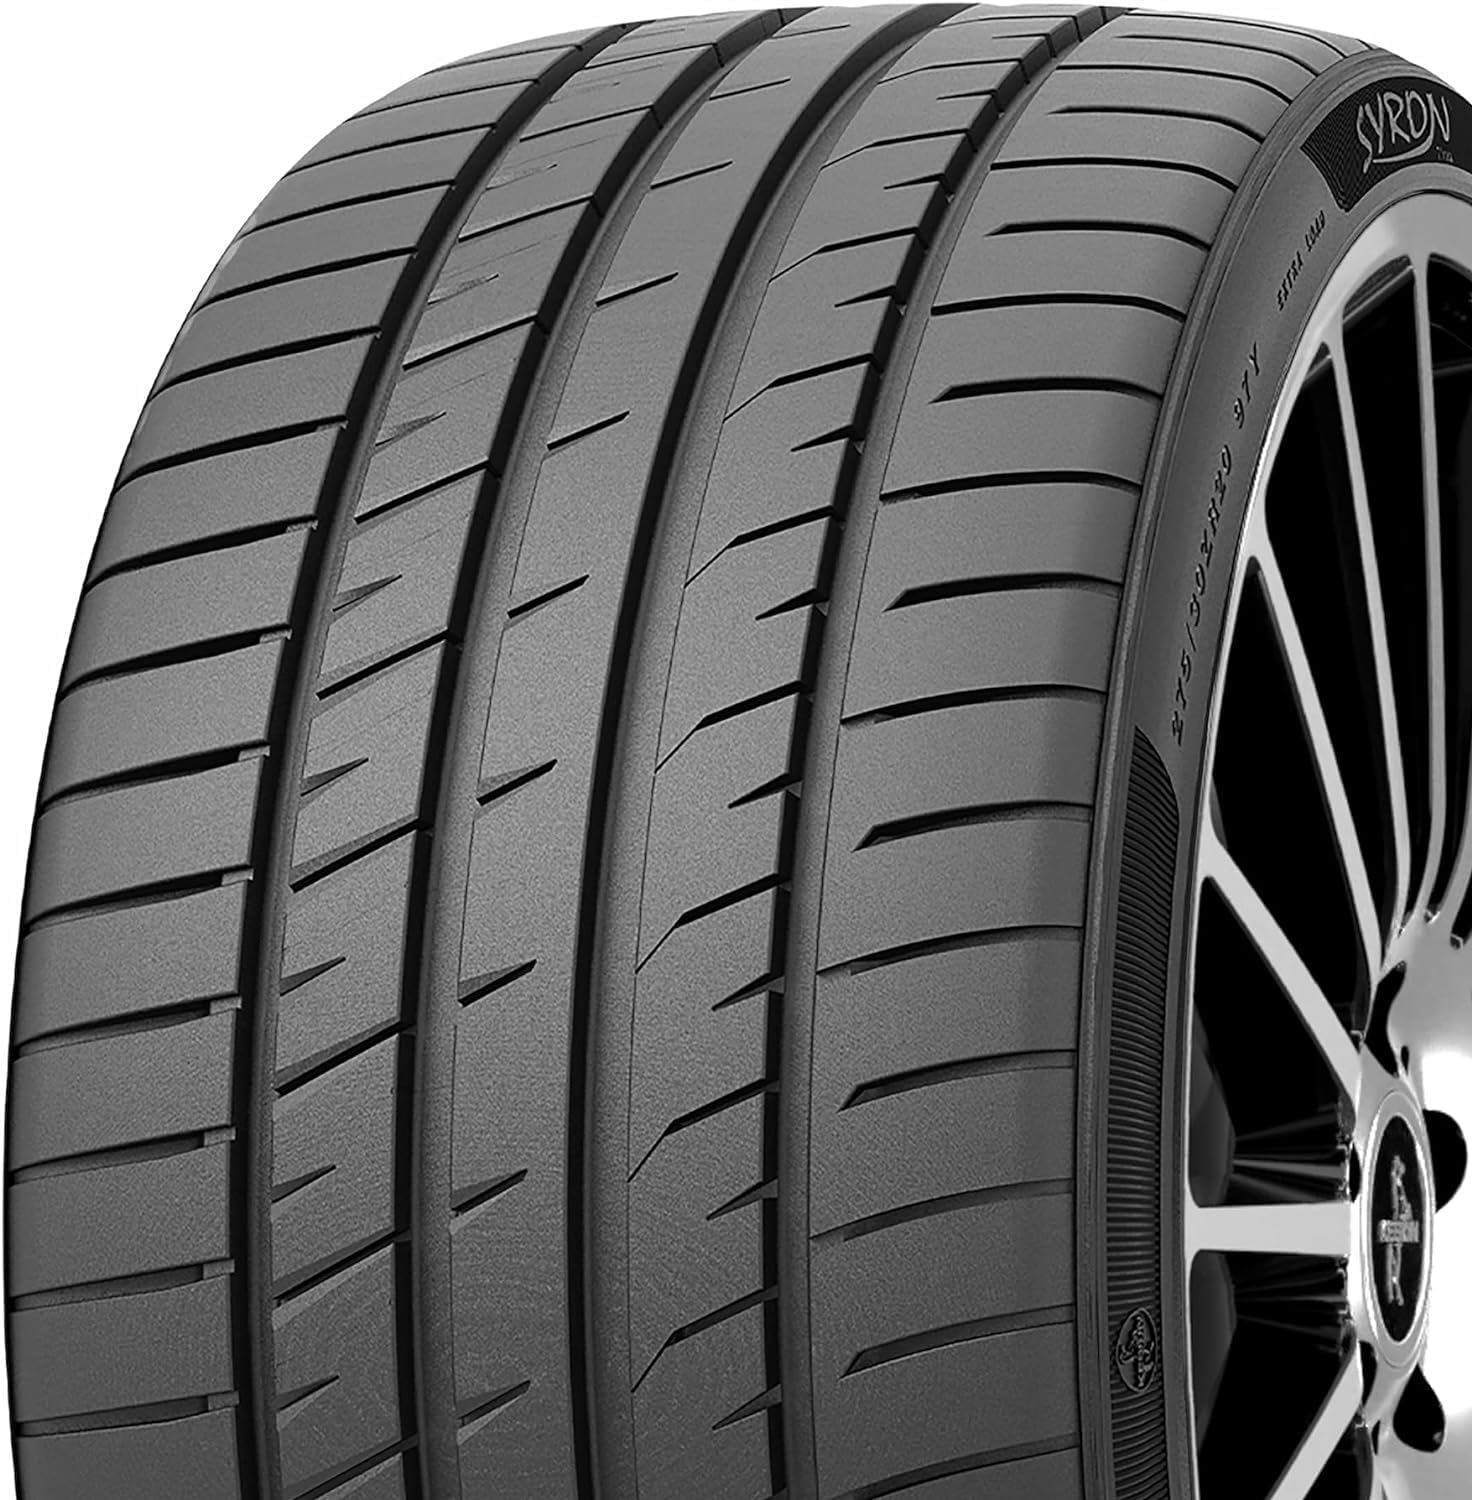 Syron Tires Premium Performance 245/45 ZR18 100Y XL - C/B/71dB Sommerreifen (PKW) von SYRON Tires